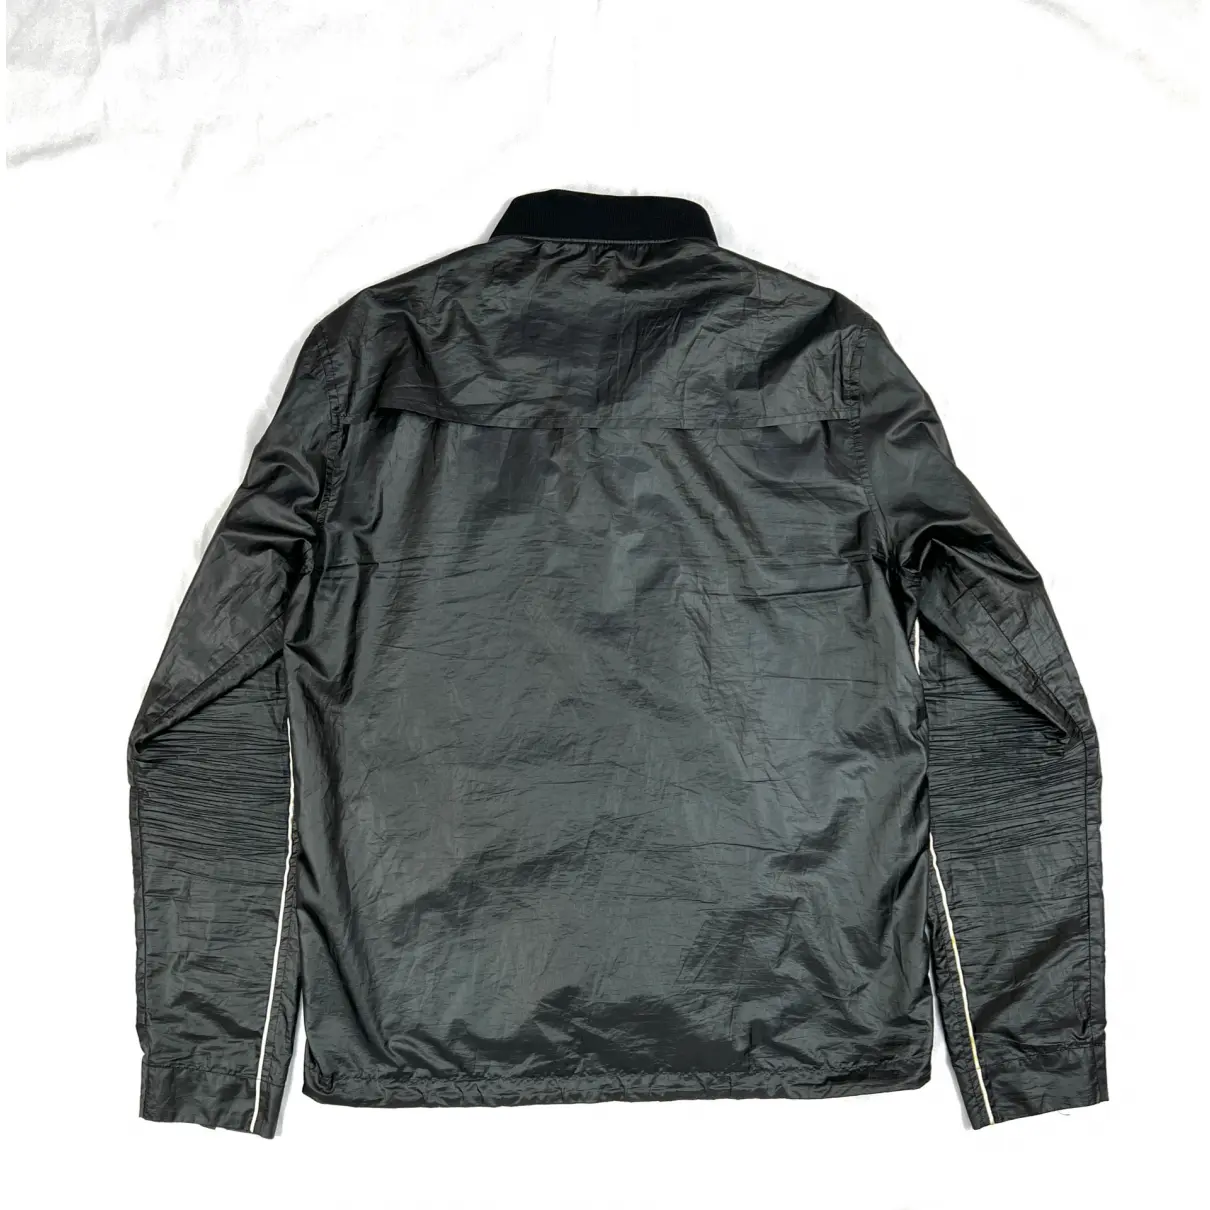 Buy Prada Jacket online - Vintage